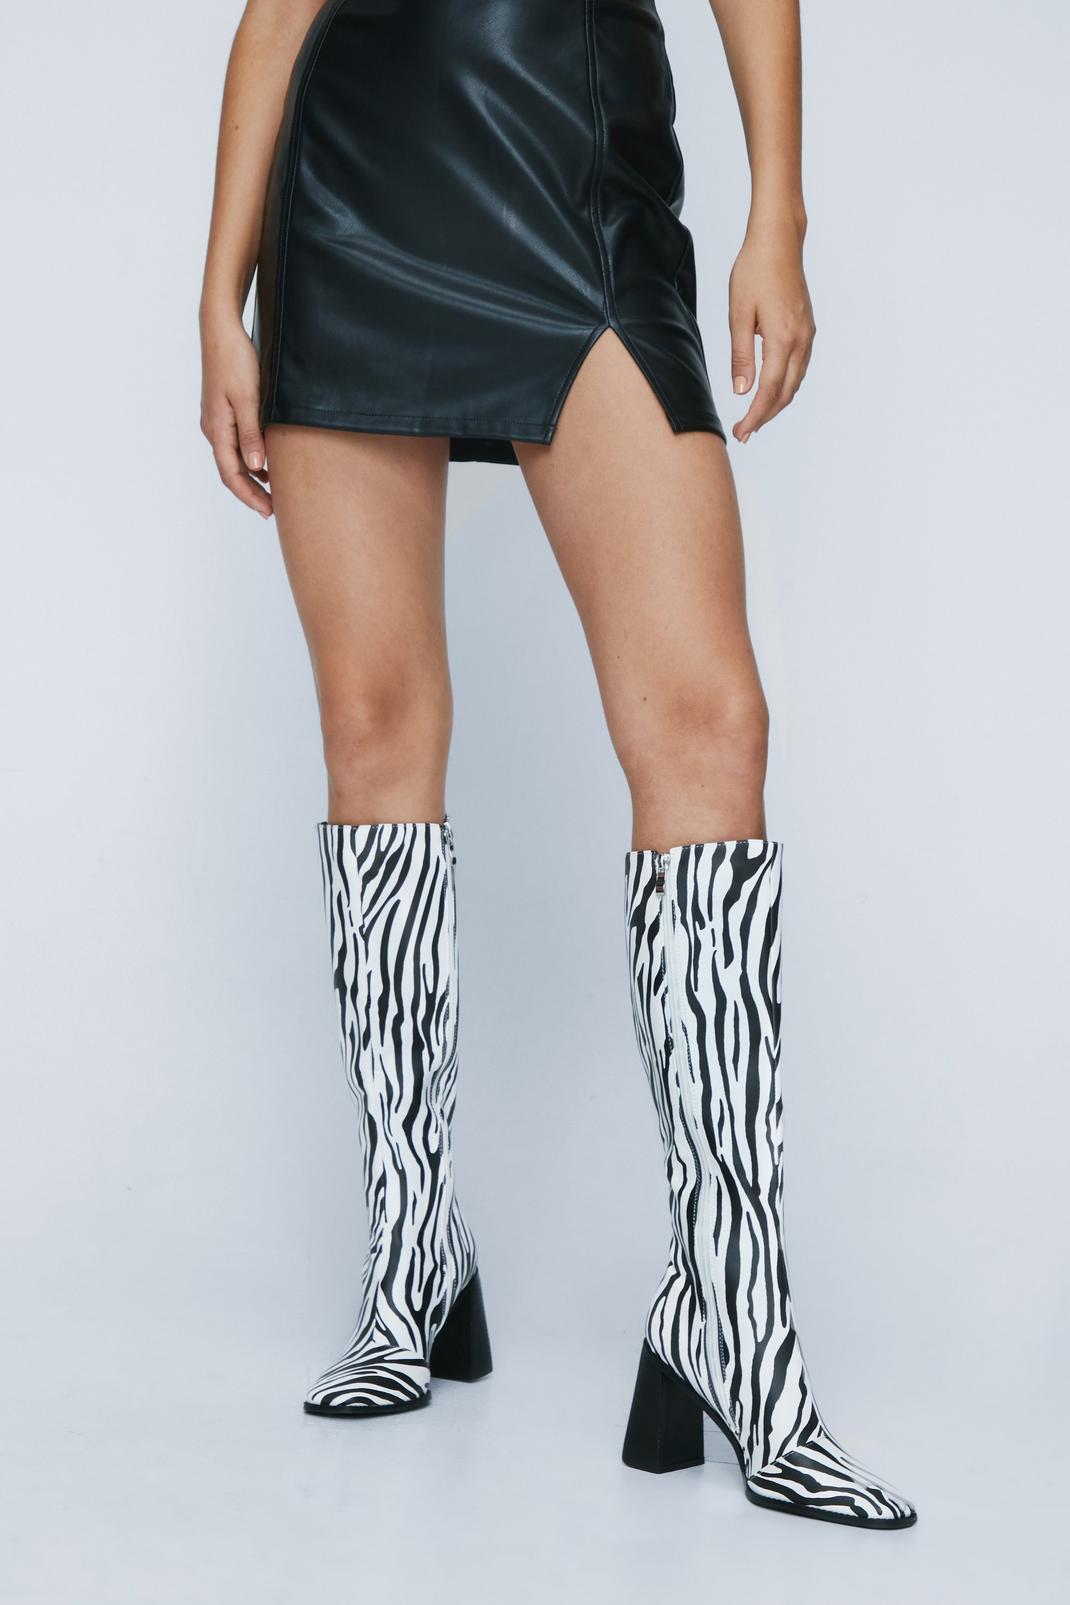 Black Zebra Print Knee High Boots image number 1